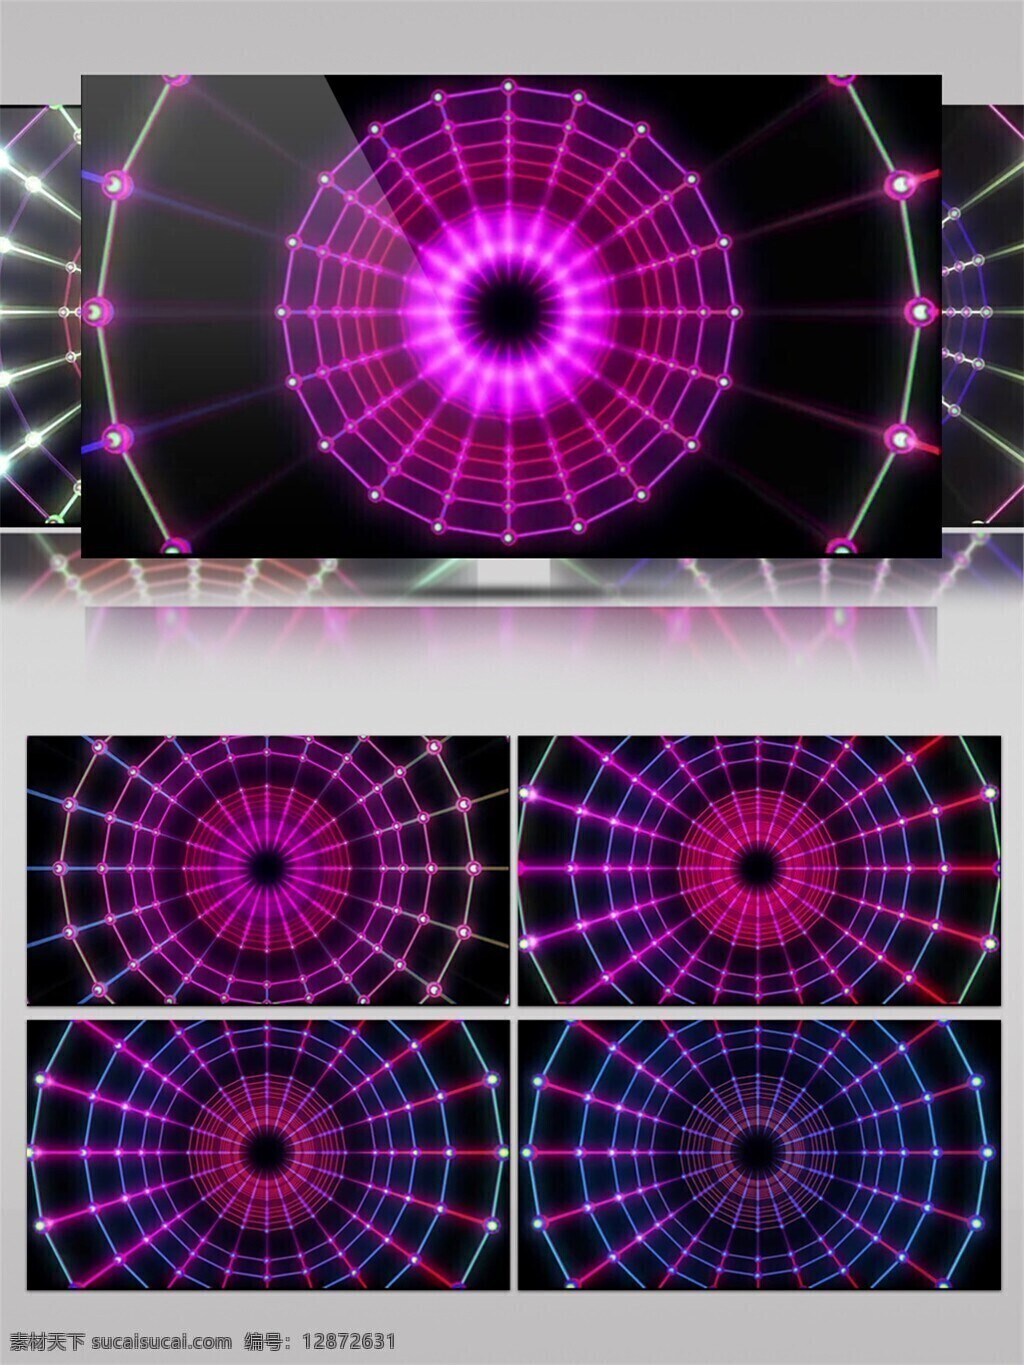 紫色 眼珠 光环 视频 眼睛 宇宙 光束 唯美背景素材 视觉享受 节目灯光